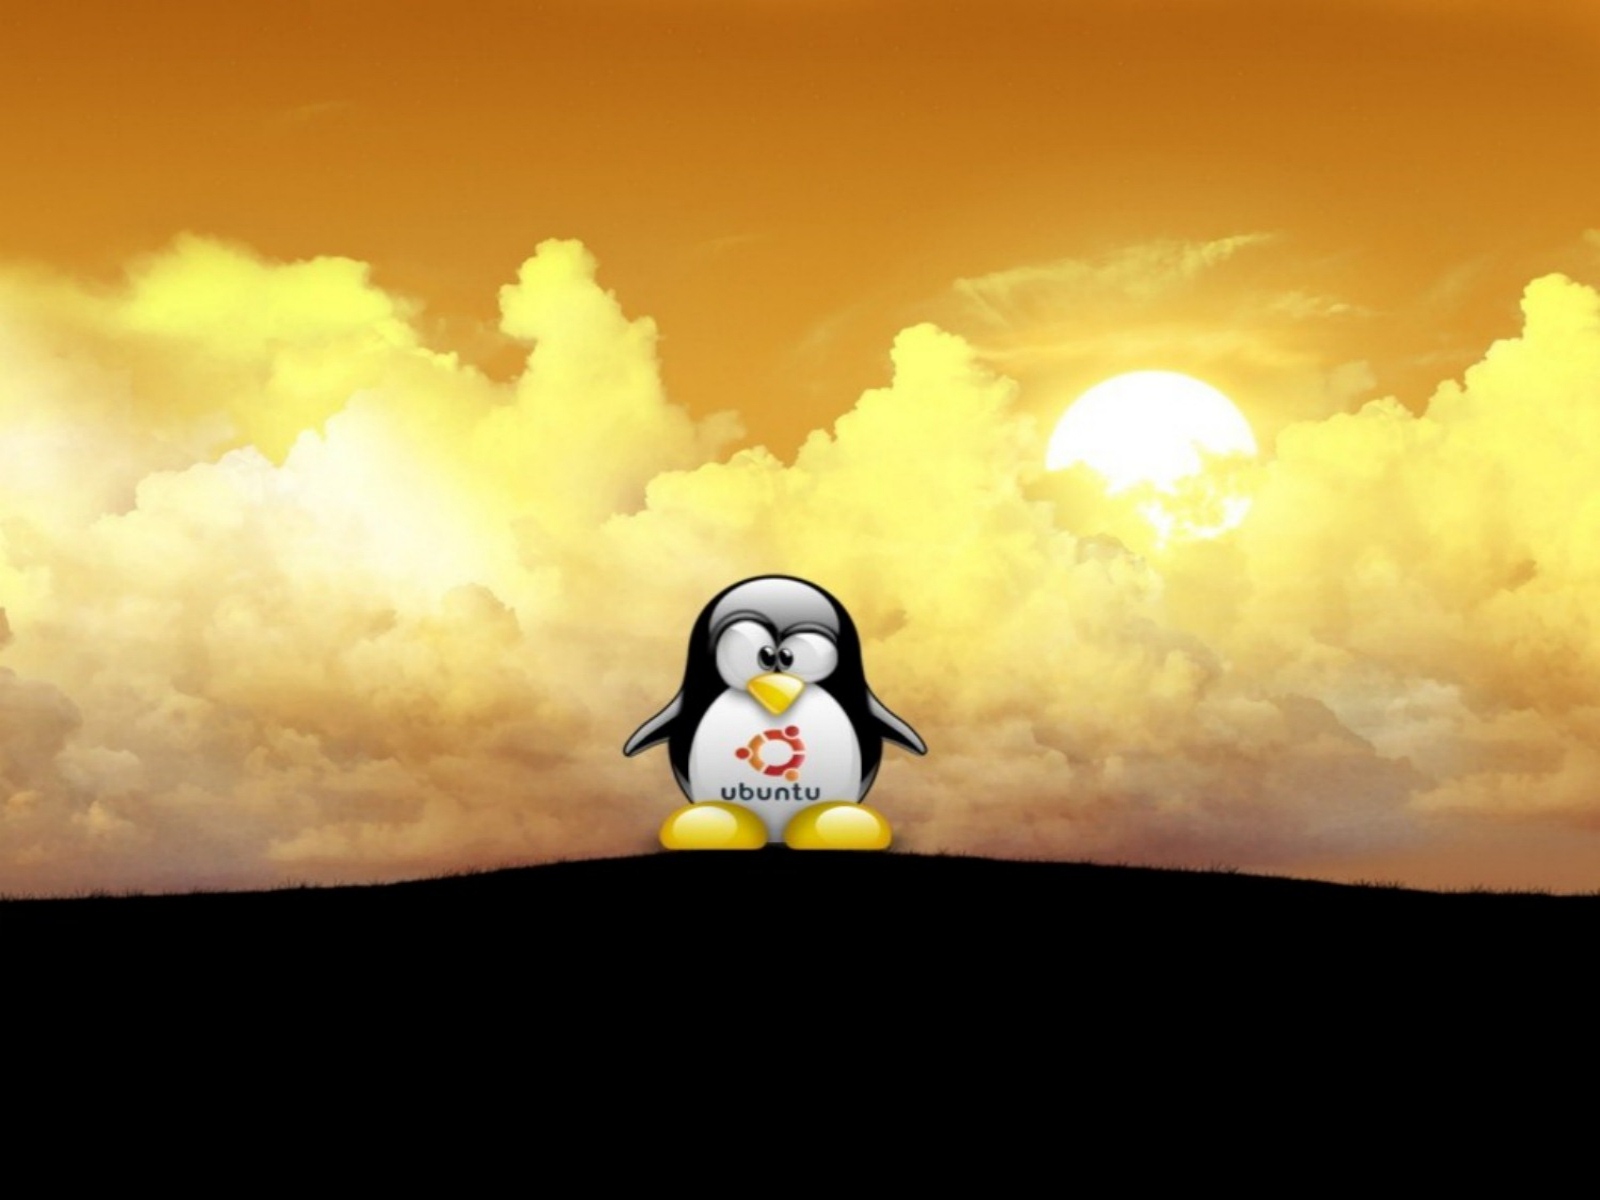 Linux Penguin Ubuntu - wallpaper.